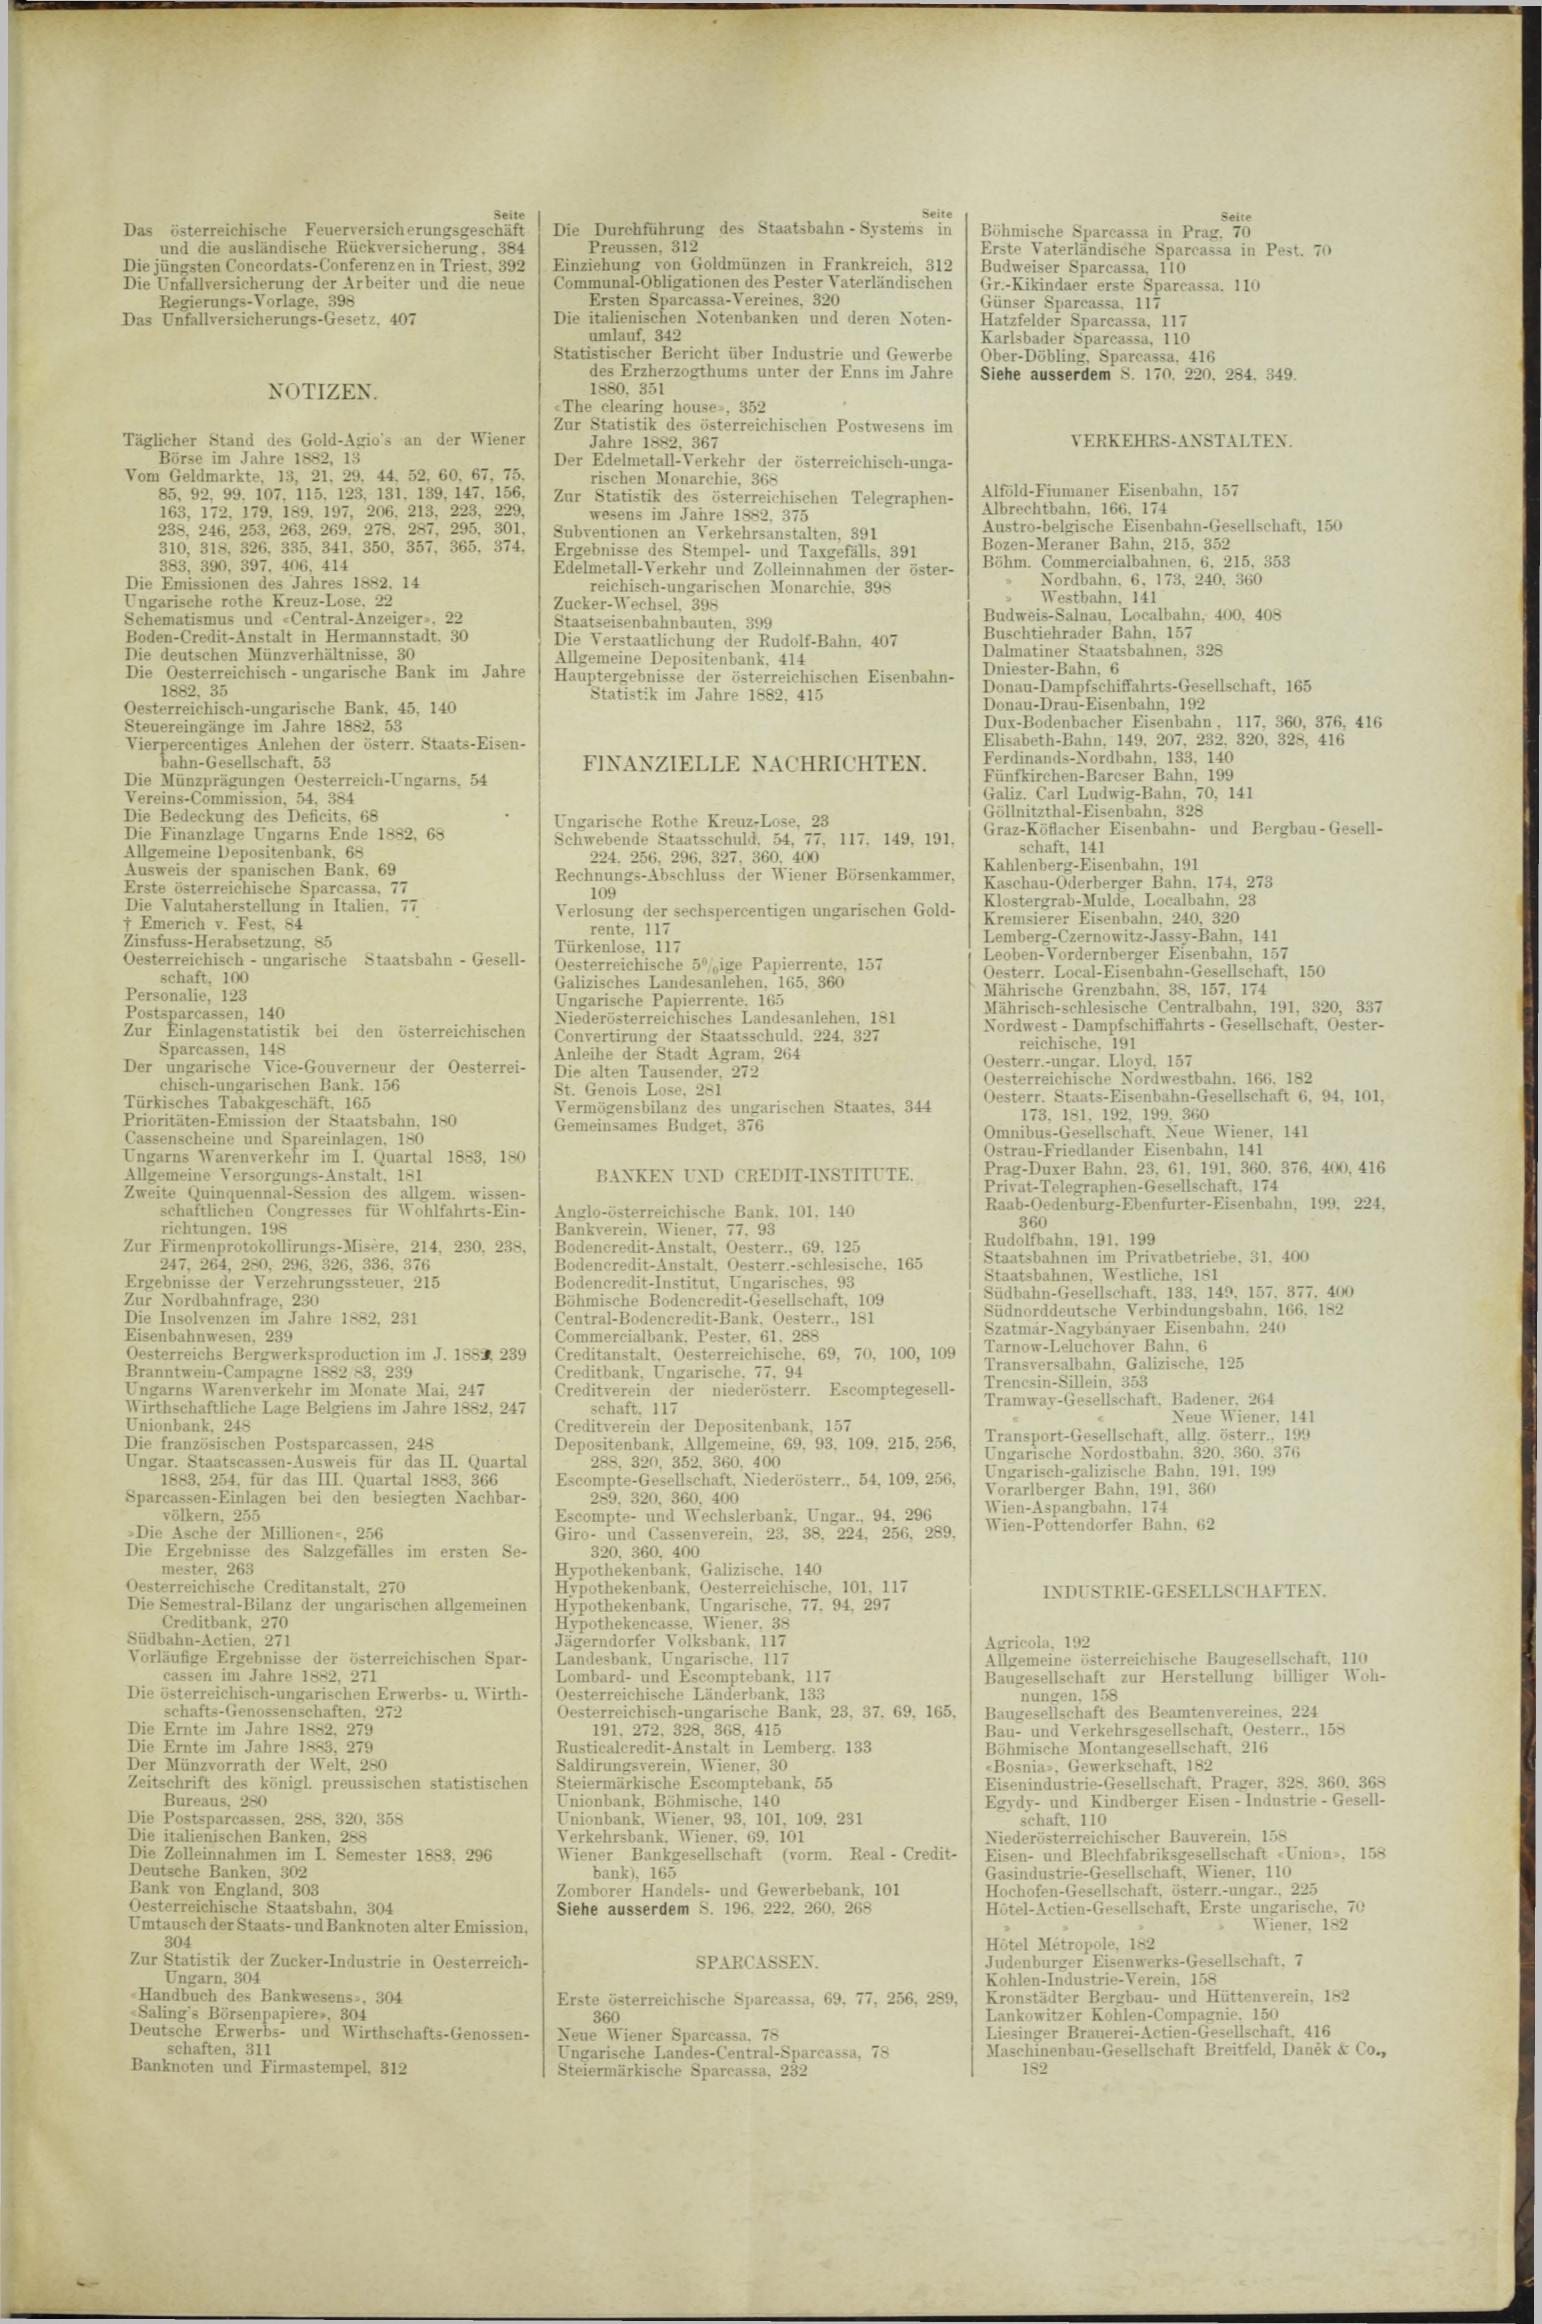 Der Tresor 16.08.1883 - Seite 11